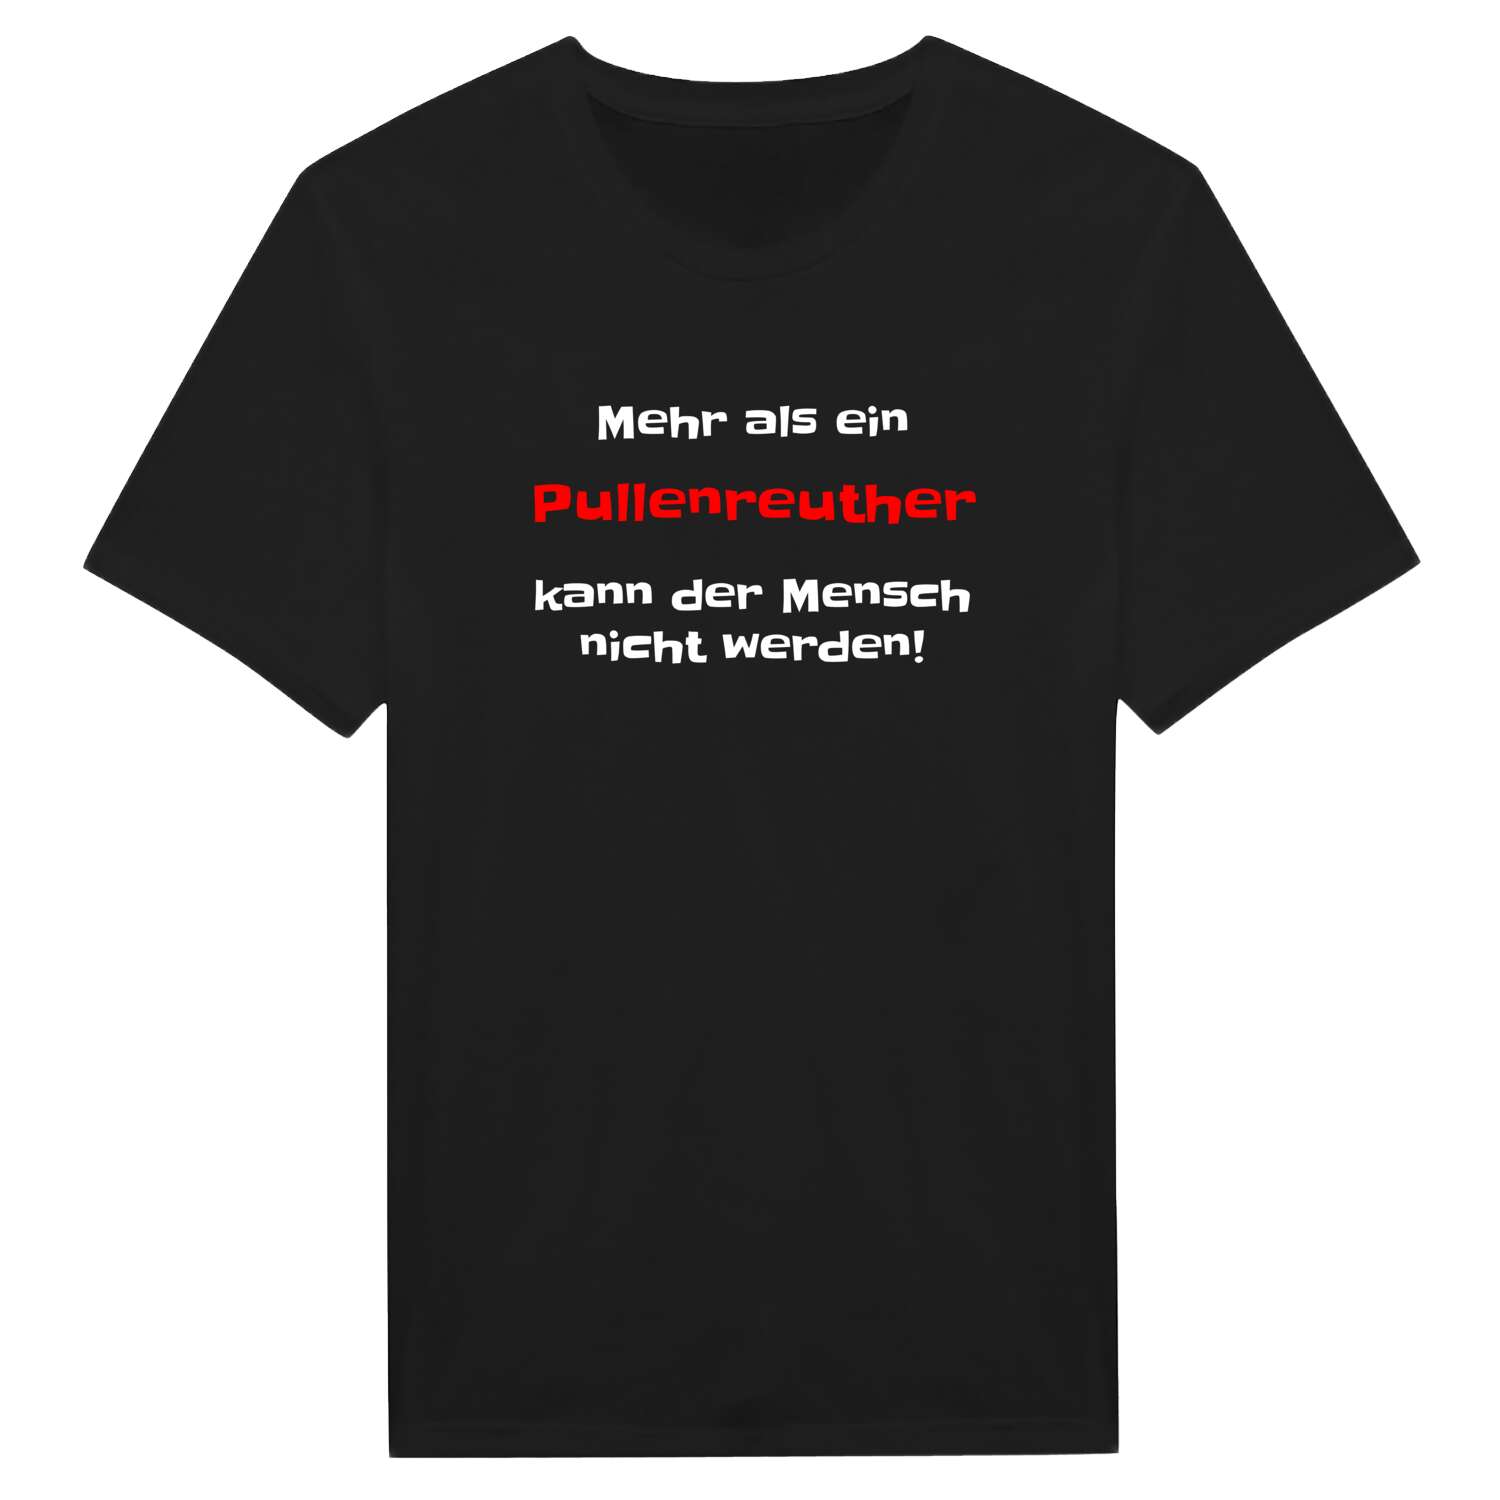 Pullenreuth T-Shirt »Mehr als ein«